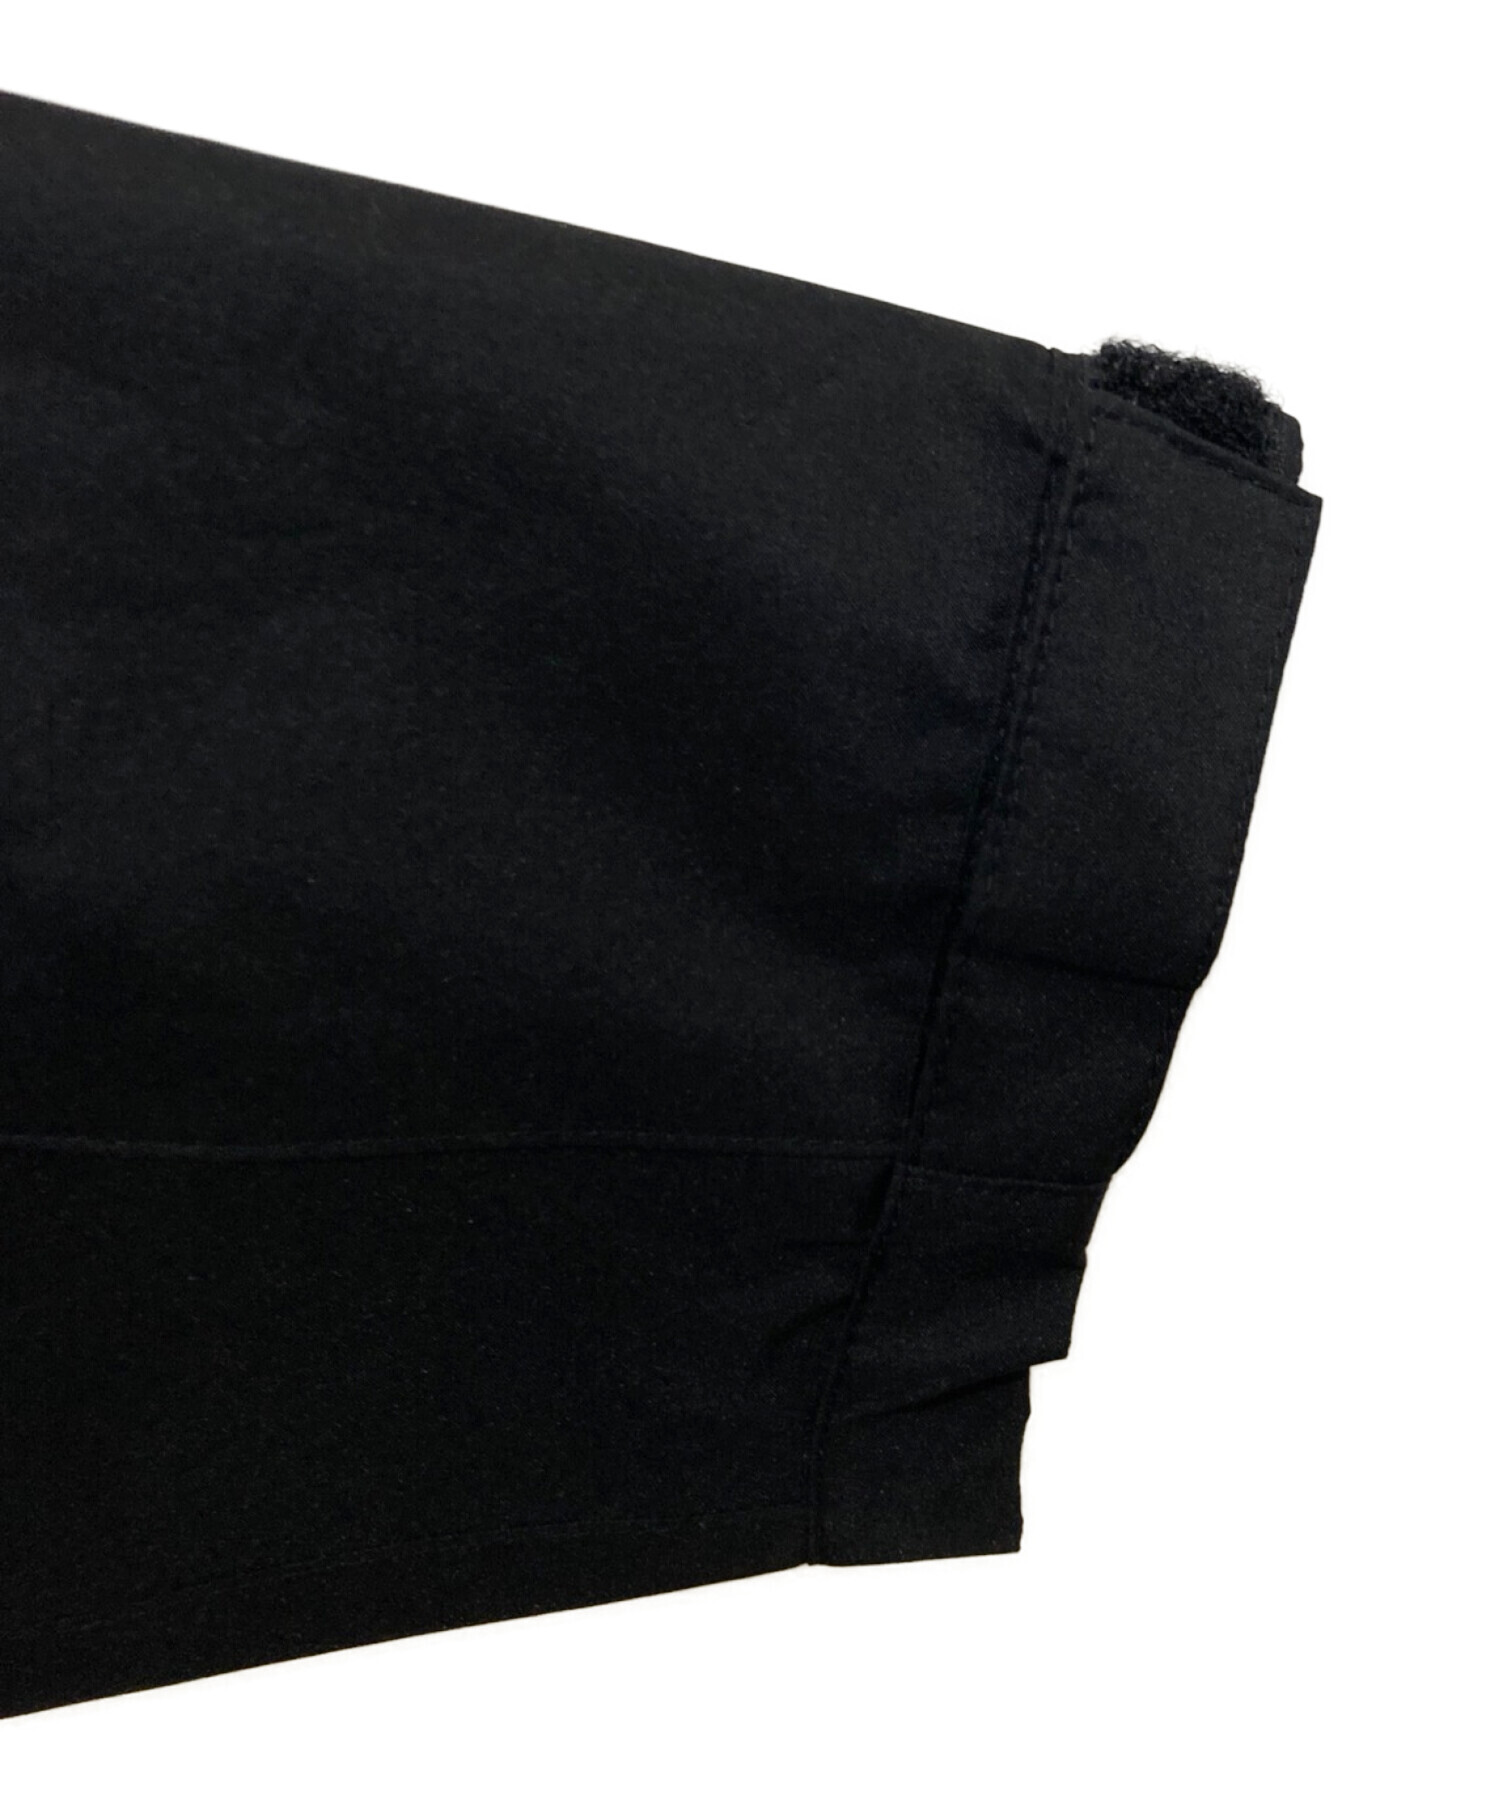 MIZUNO (ミズノ) レインジャケット ゴアテックス ブラック サイズ:L 未使用品